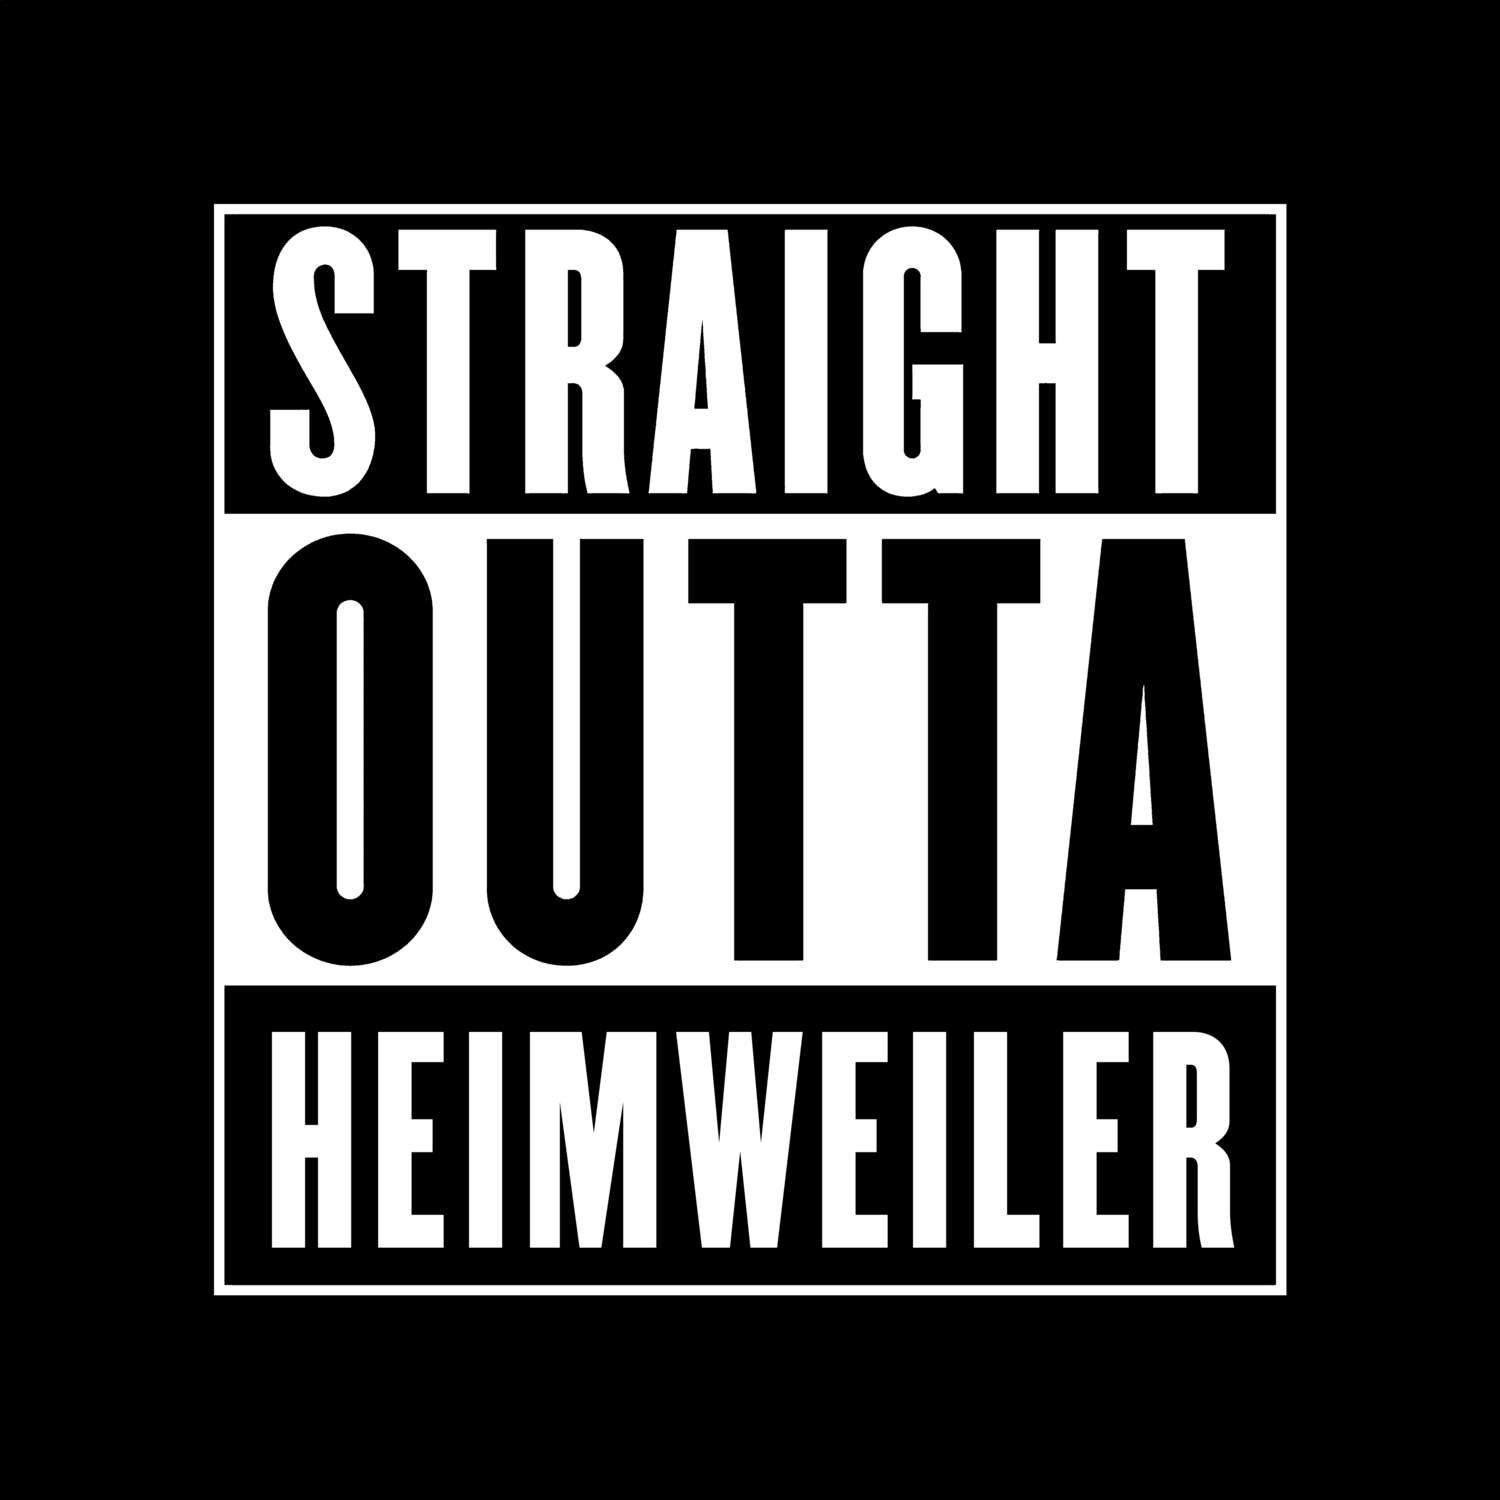 Heimweiler T-Shirt »Straight Outta«